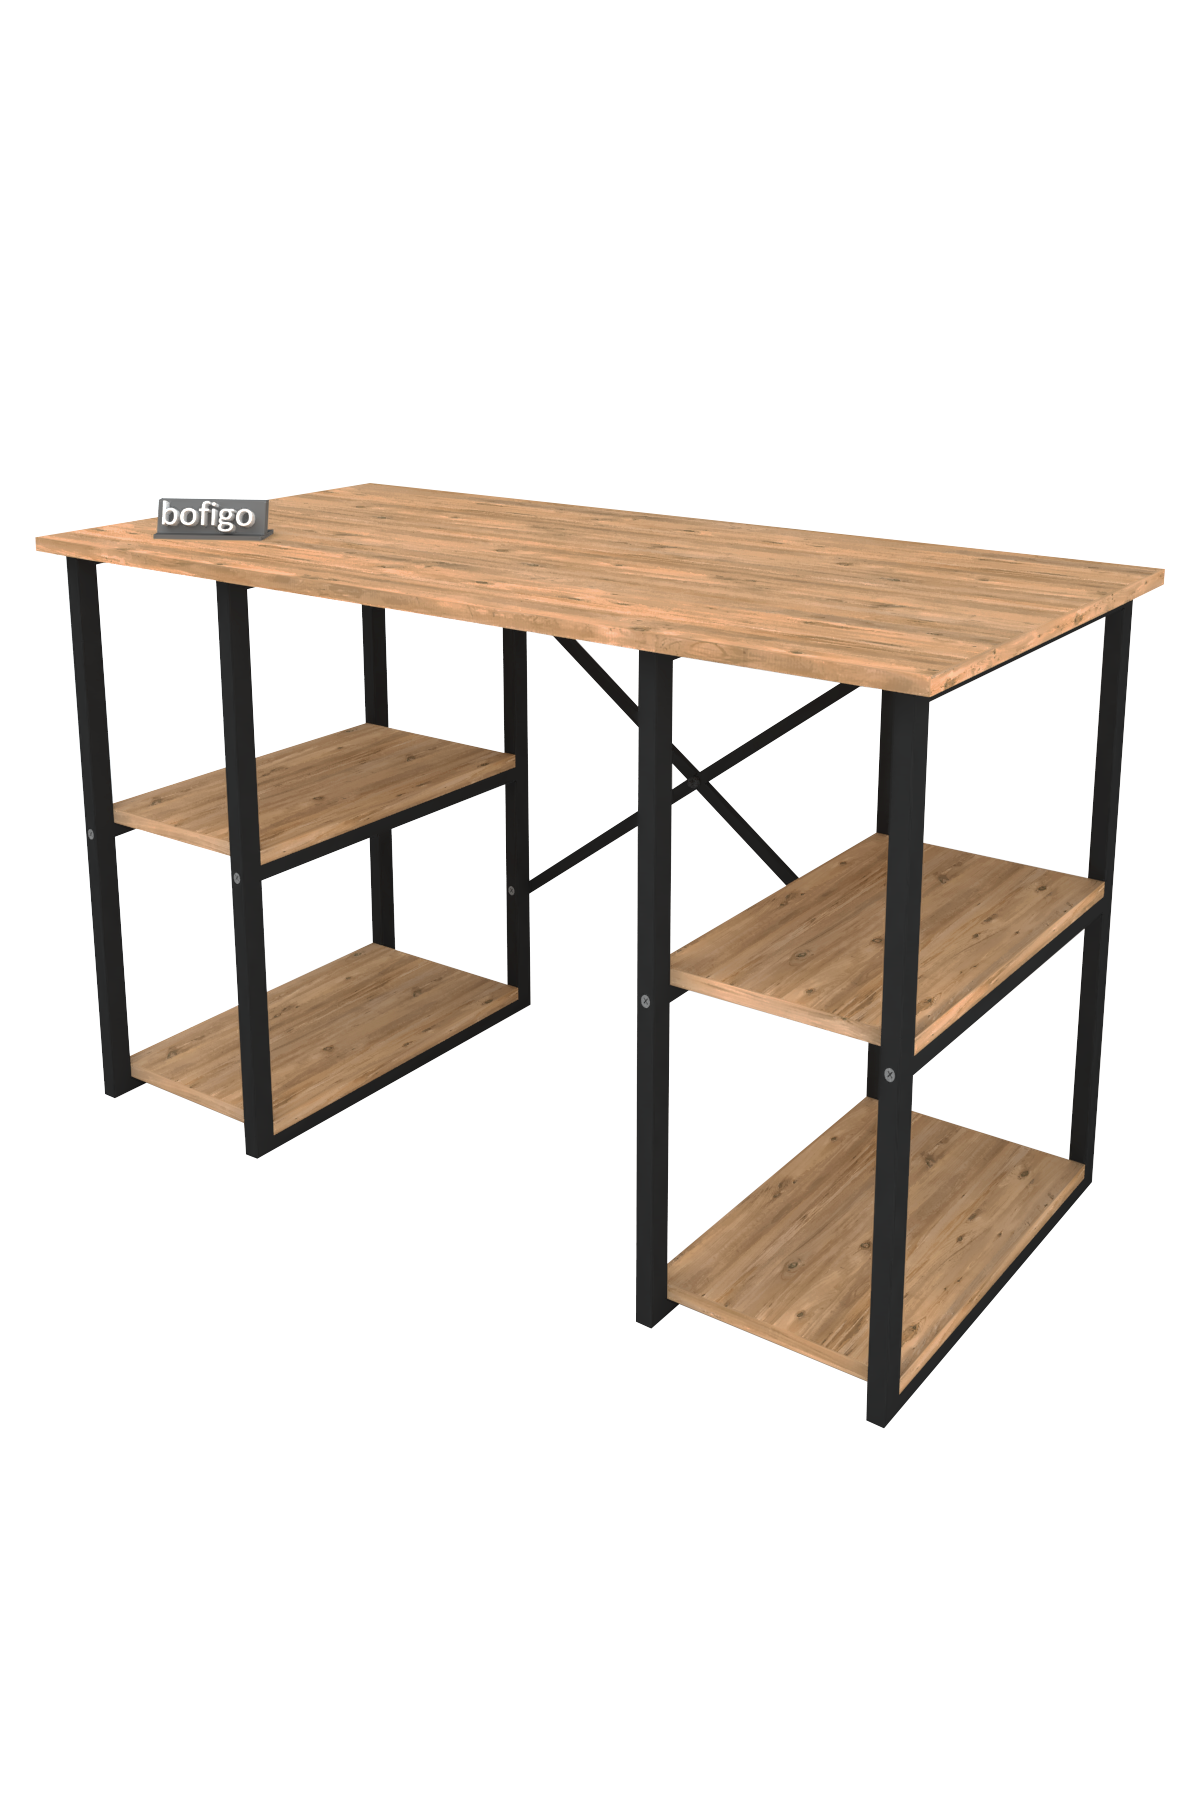 Bofigo 4 Shelf Desk 60x120 cm Pine